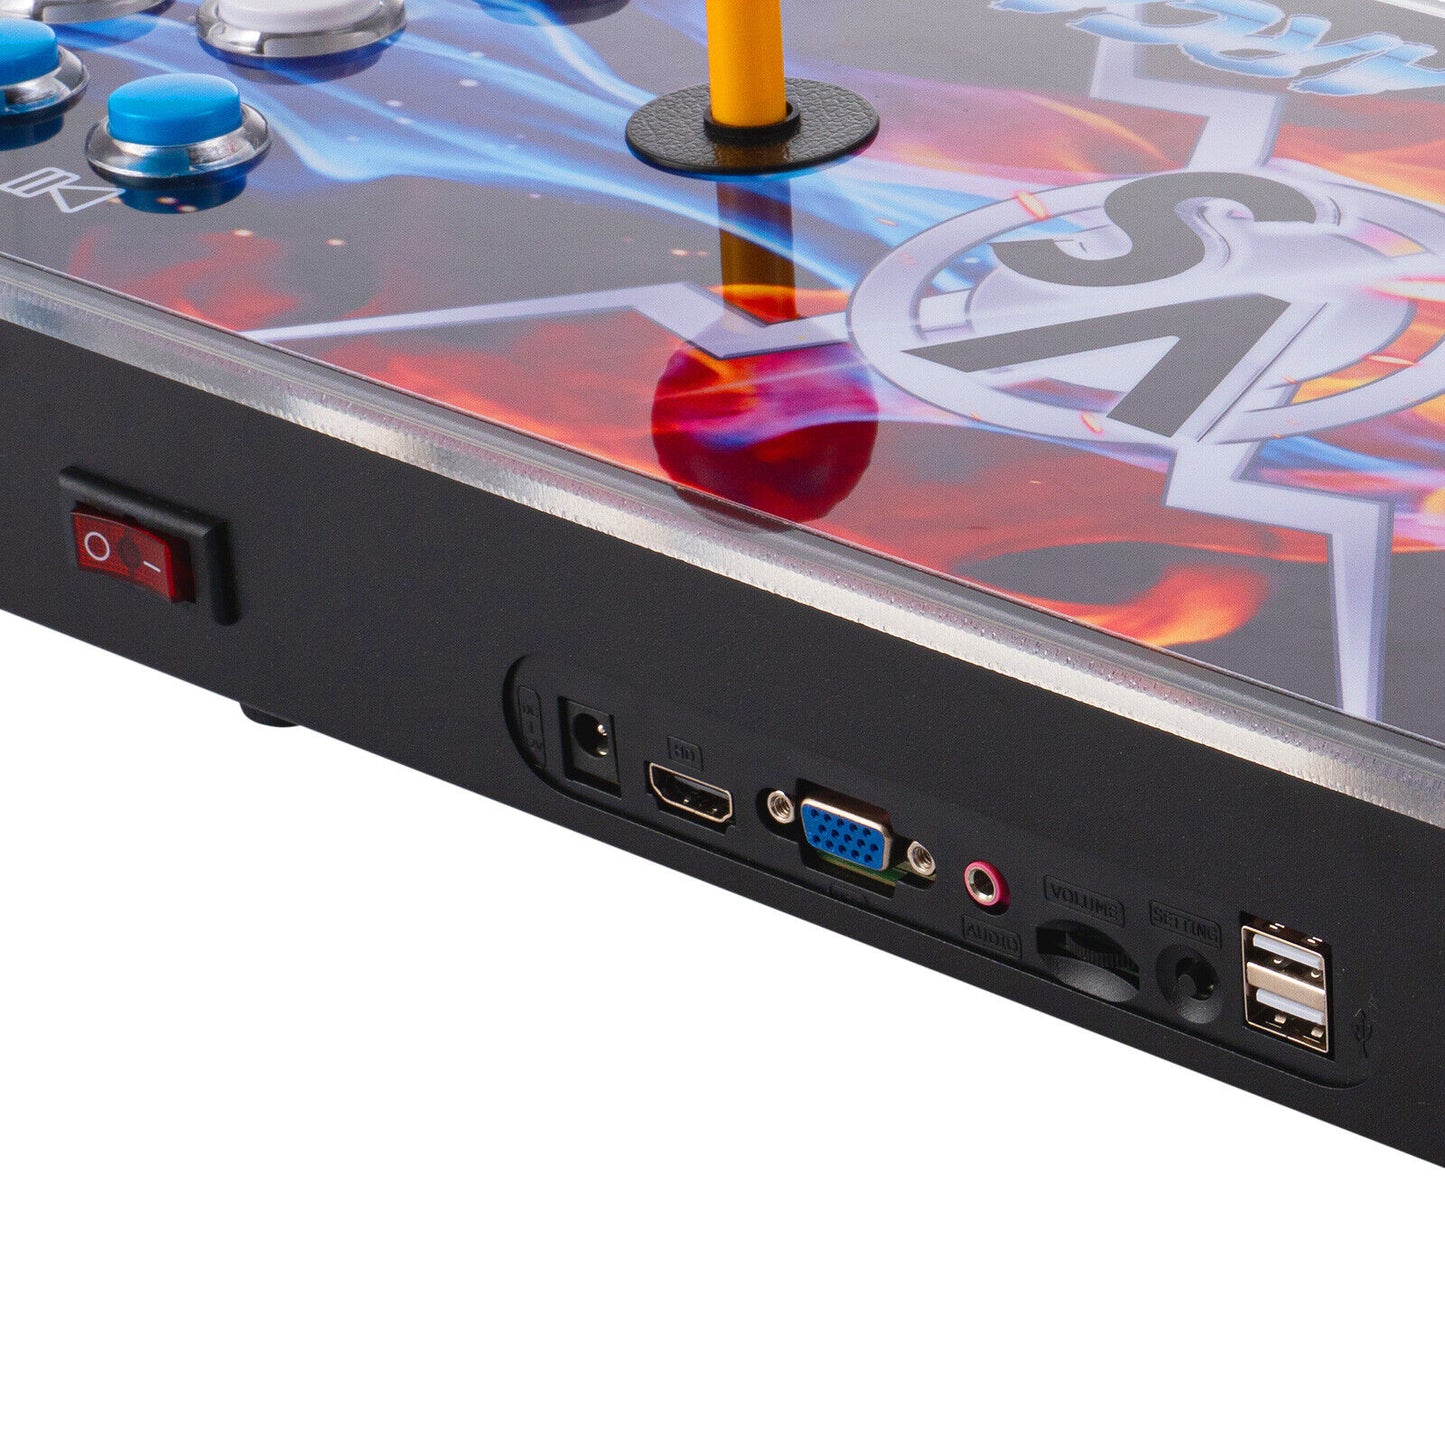 New Pandora Box 30s 5000 in 1 Retro Video Games Double Stick Arcade Console